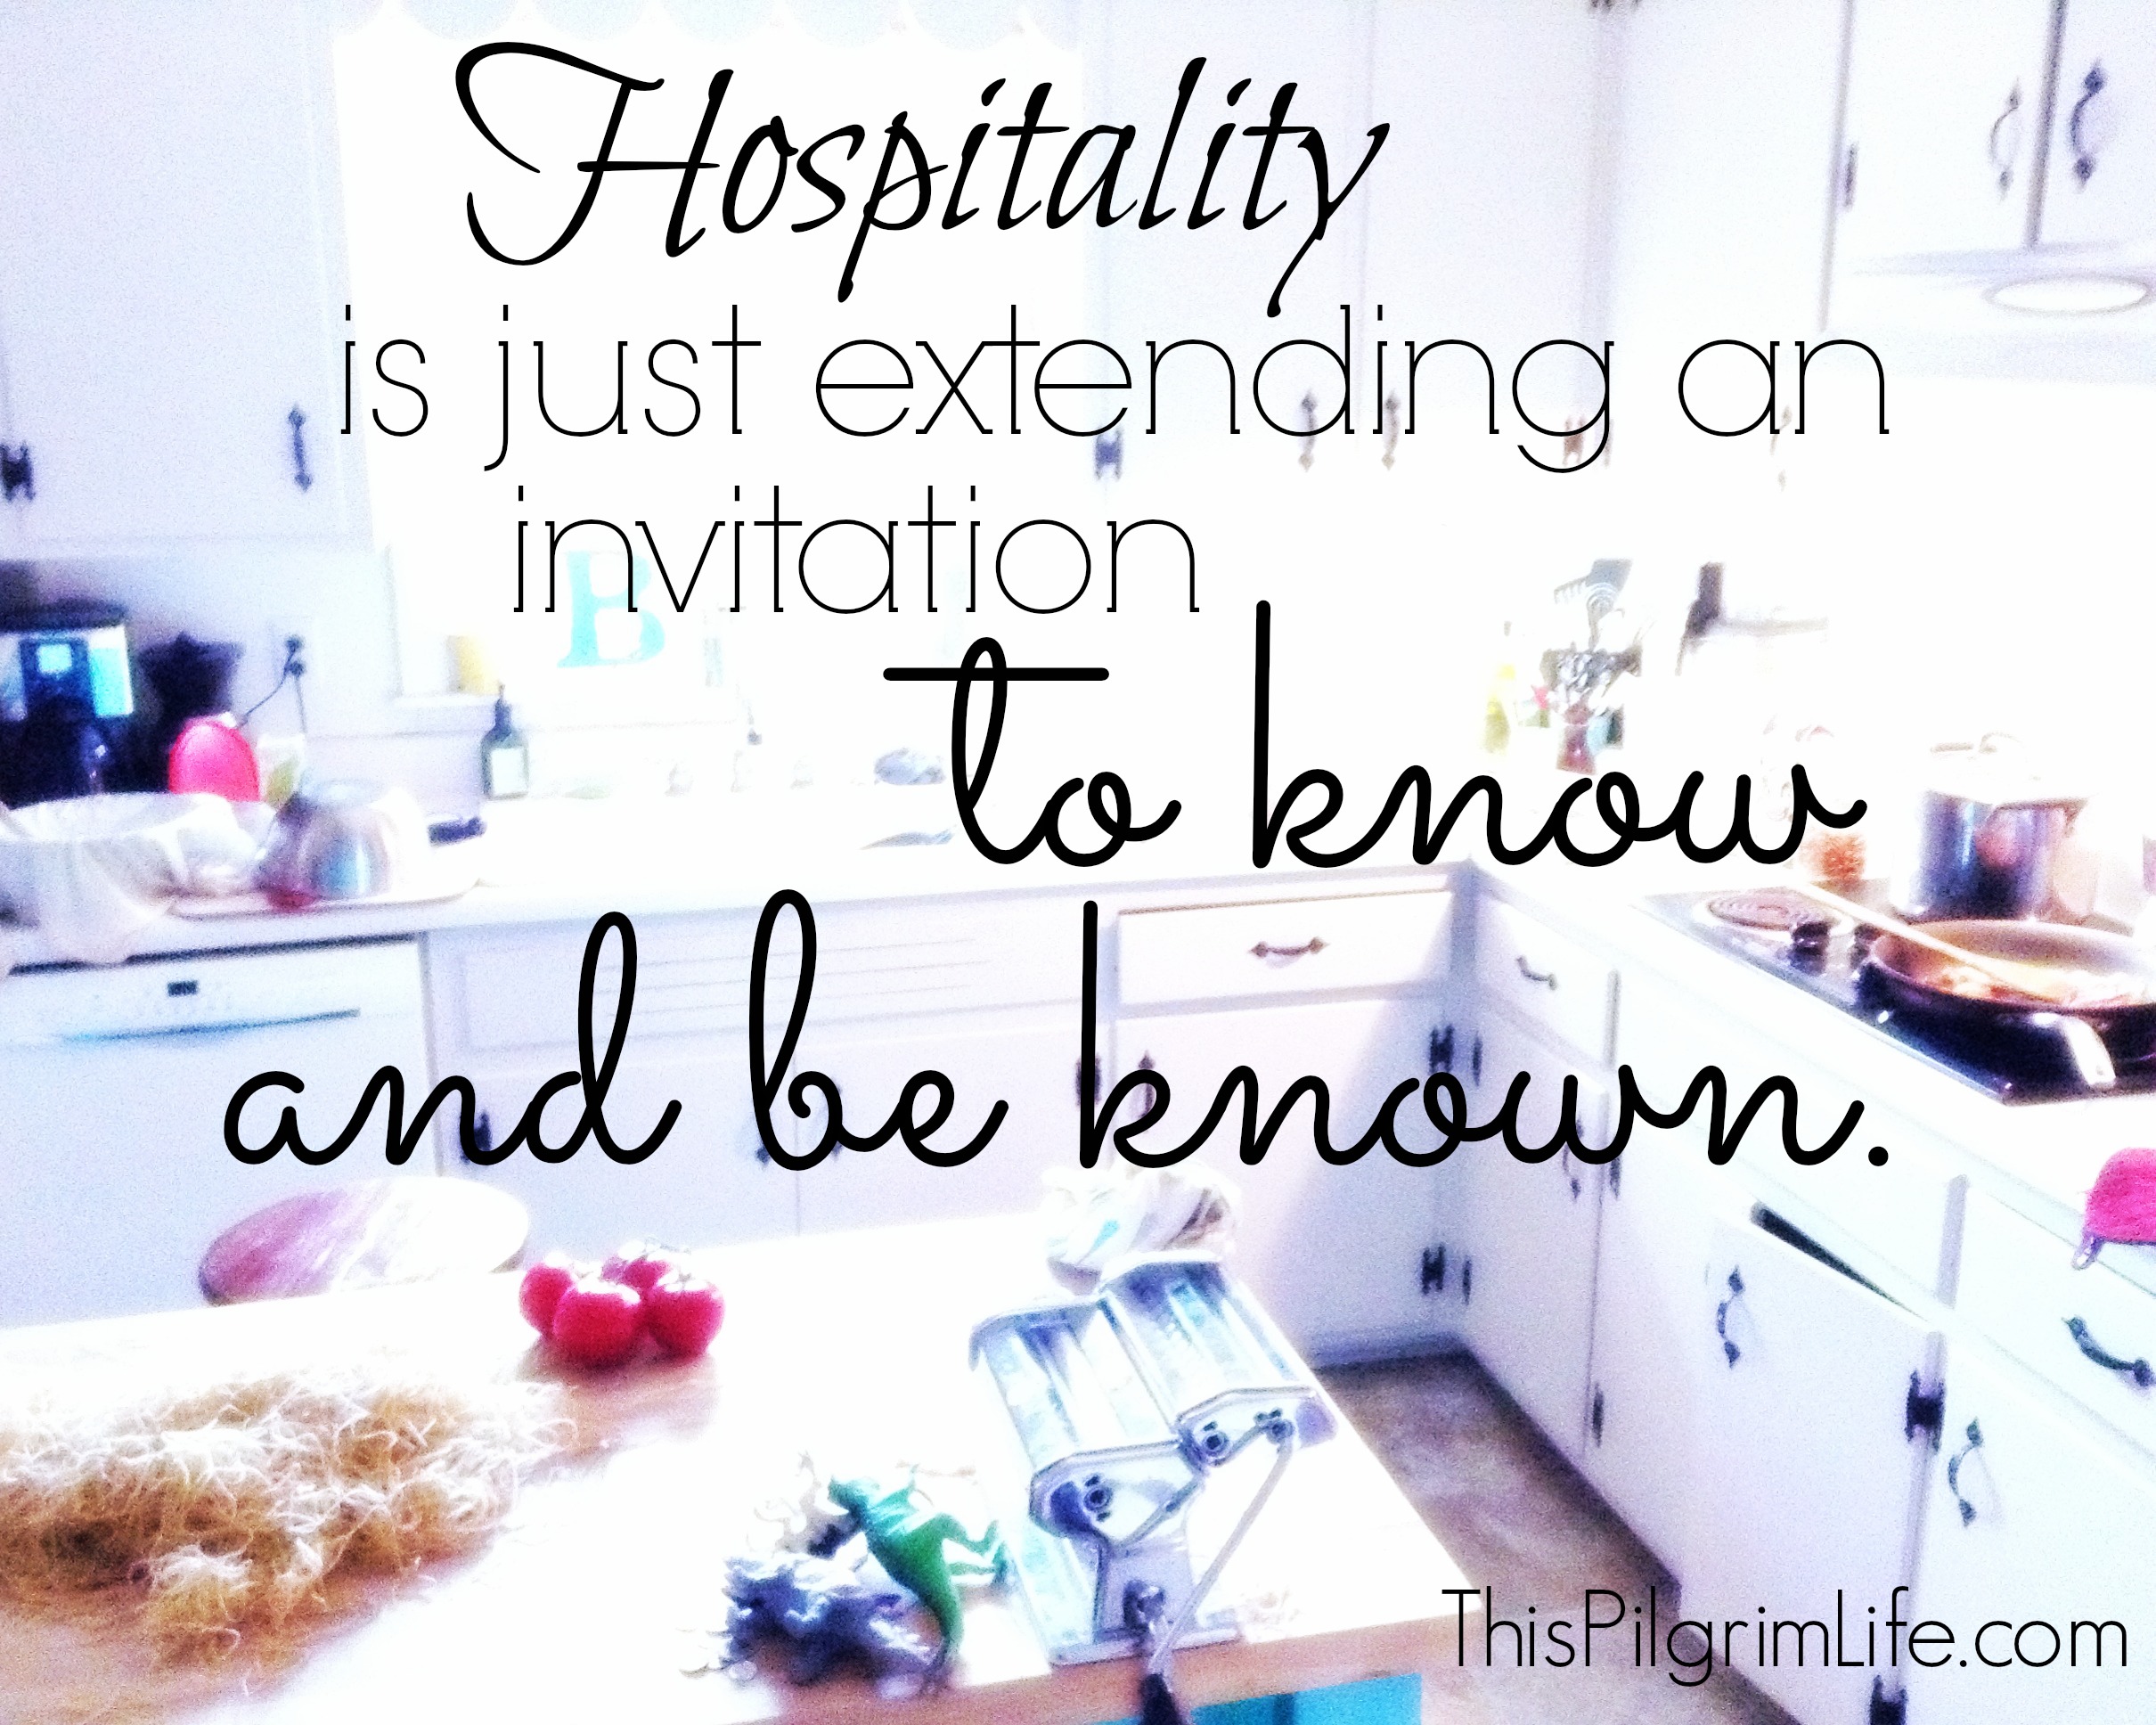 Risky Hospitality